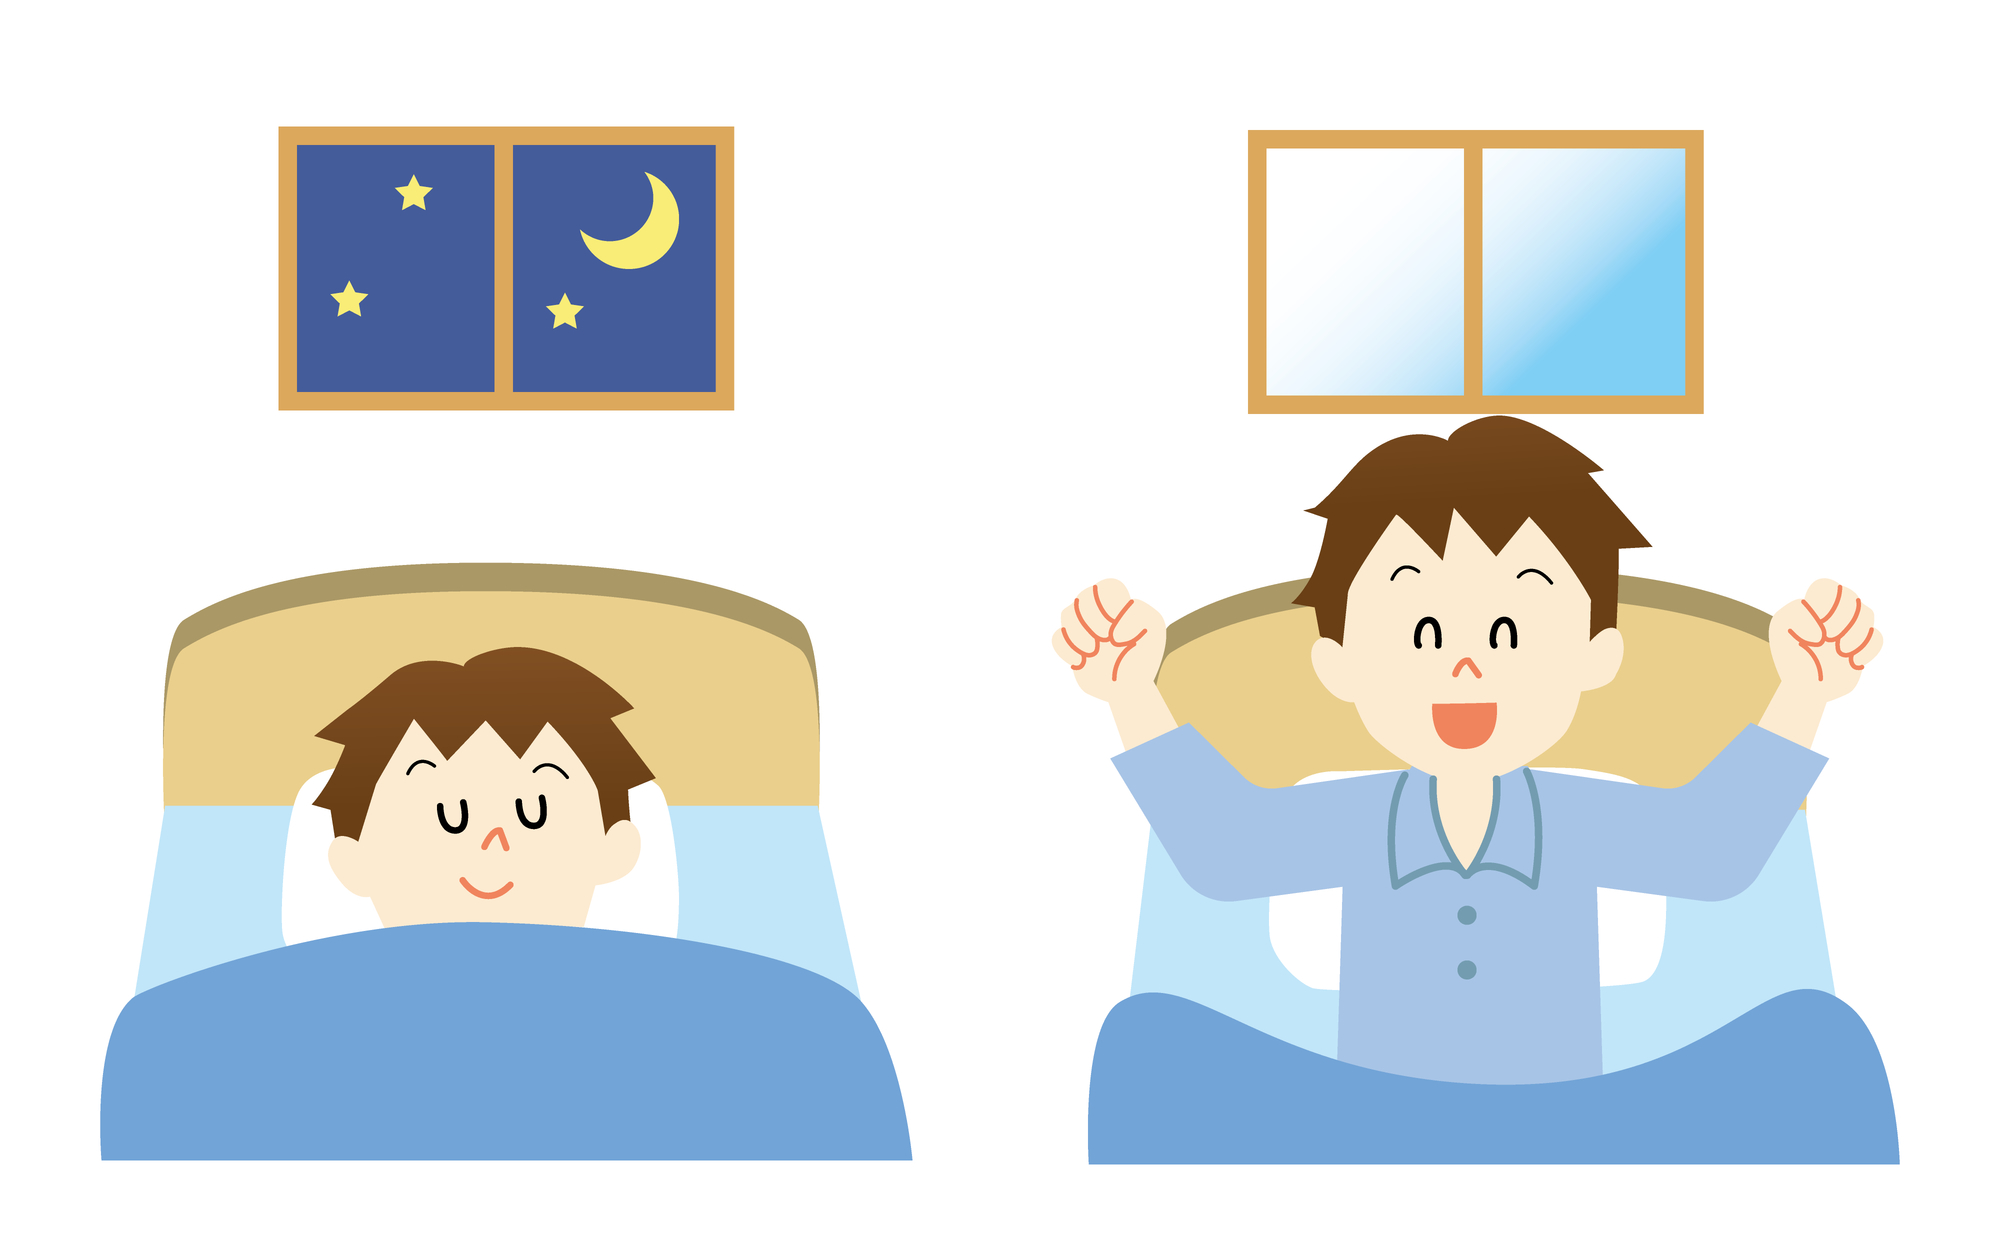 夜寝ている男性（左）と、朝笑顔でベッドから起き上がっている男性（右）のイラスト